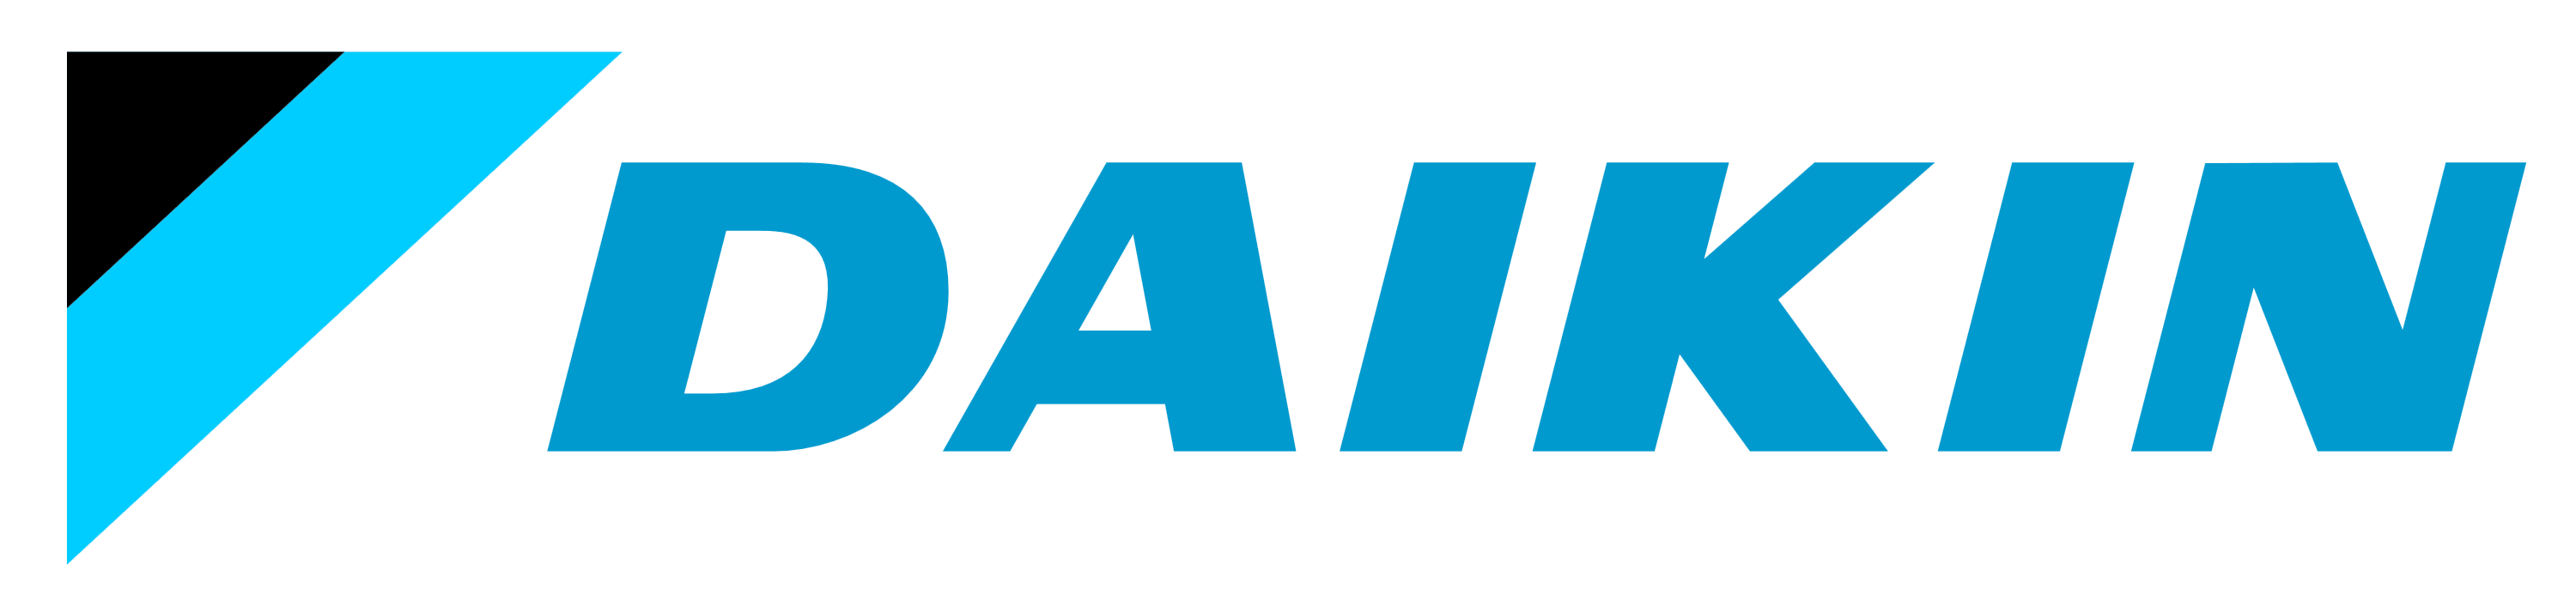 Daikin logo, logotype